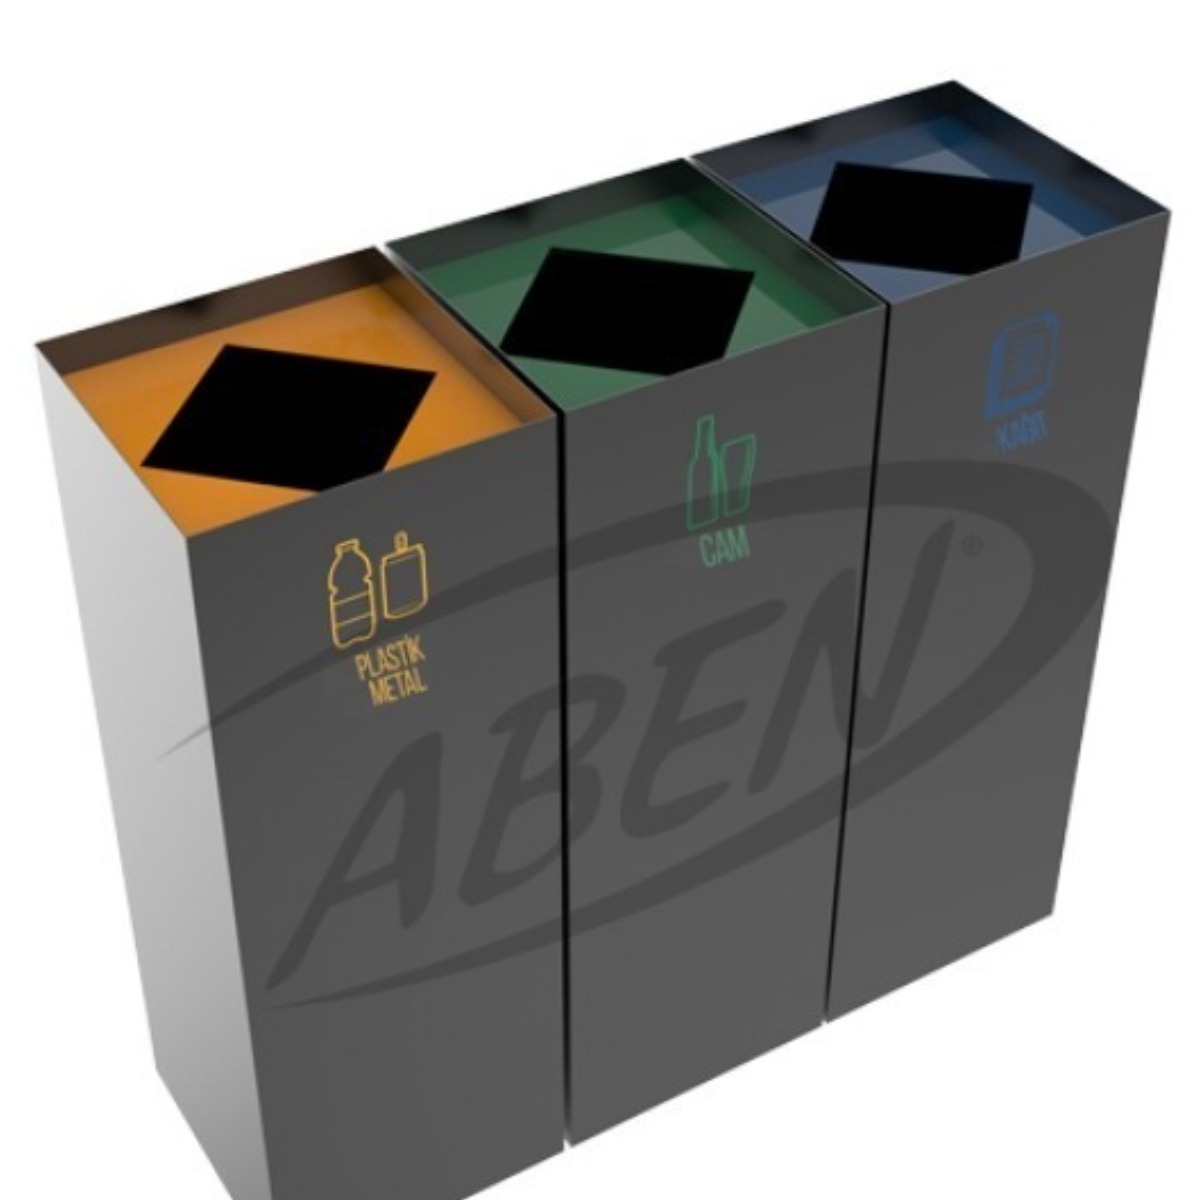 AB-791 3'Part Recycle Bin adlı ürünün logosu